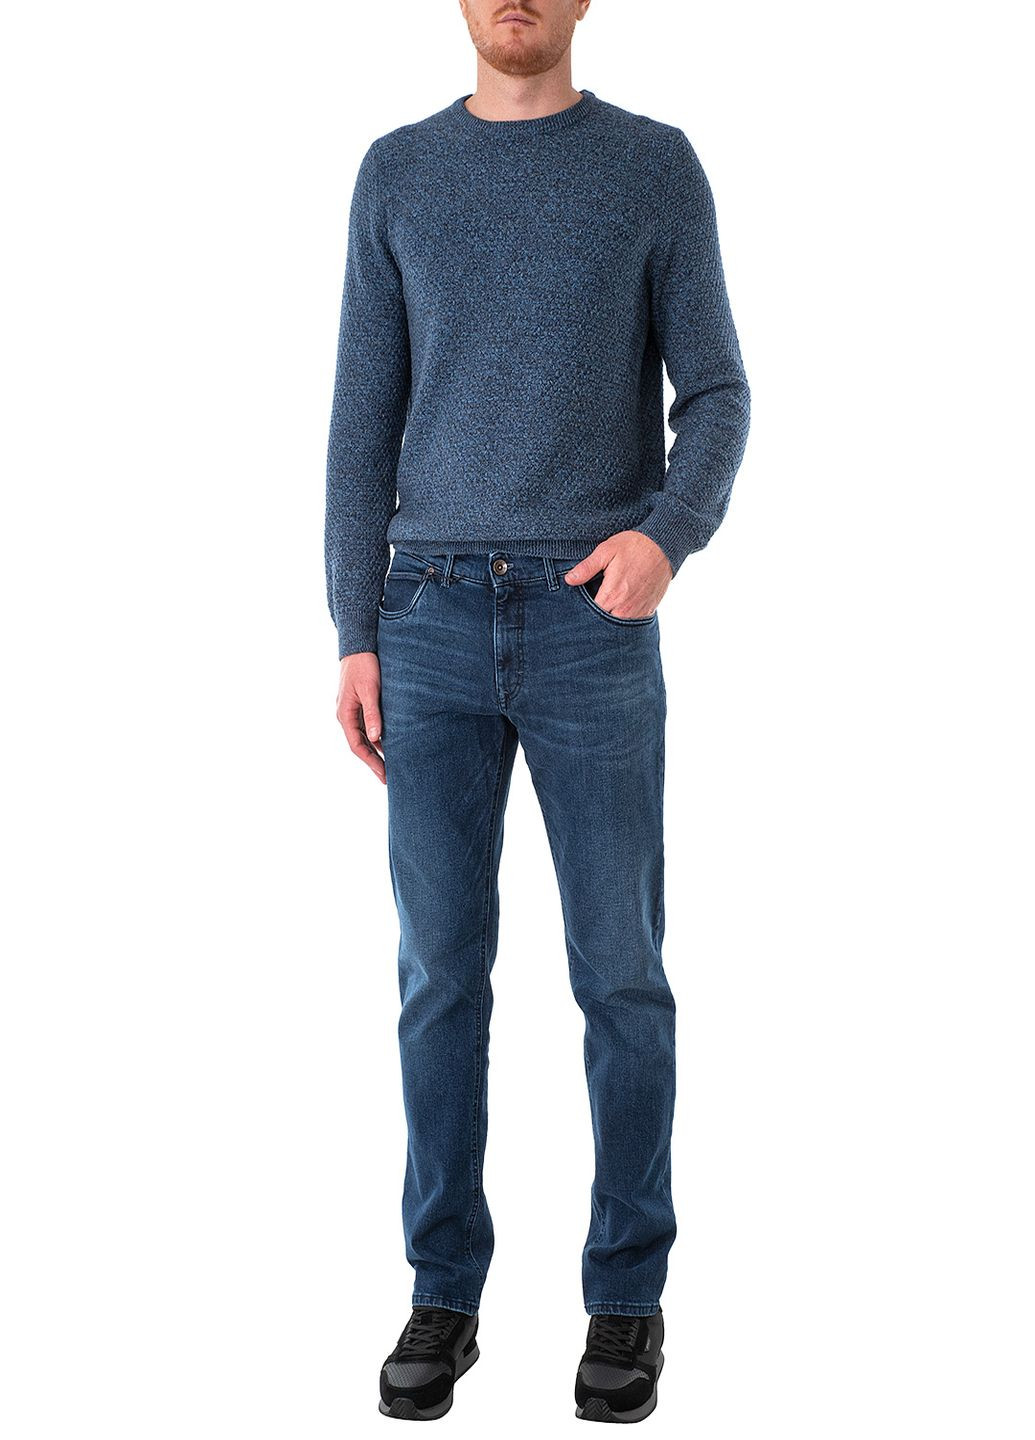 Синие зимние джинсы Gardeur